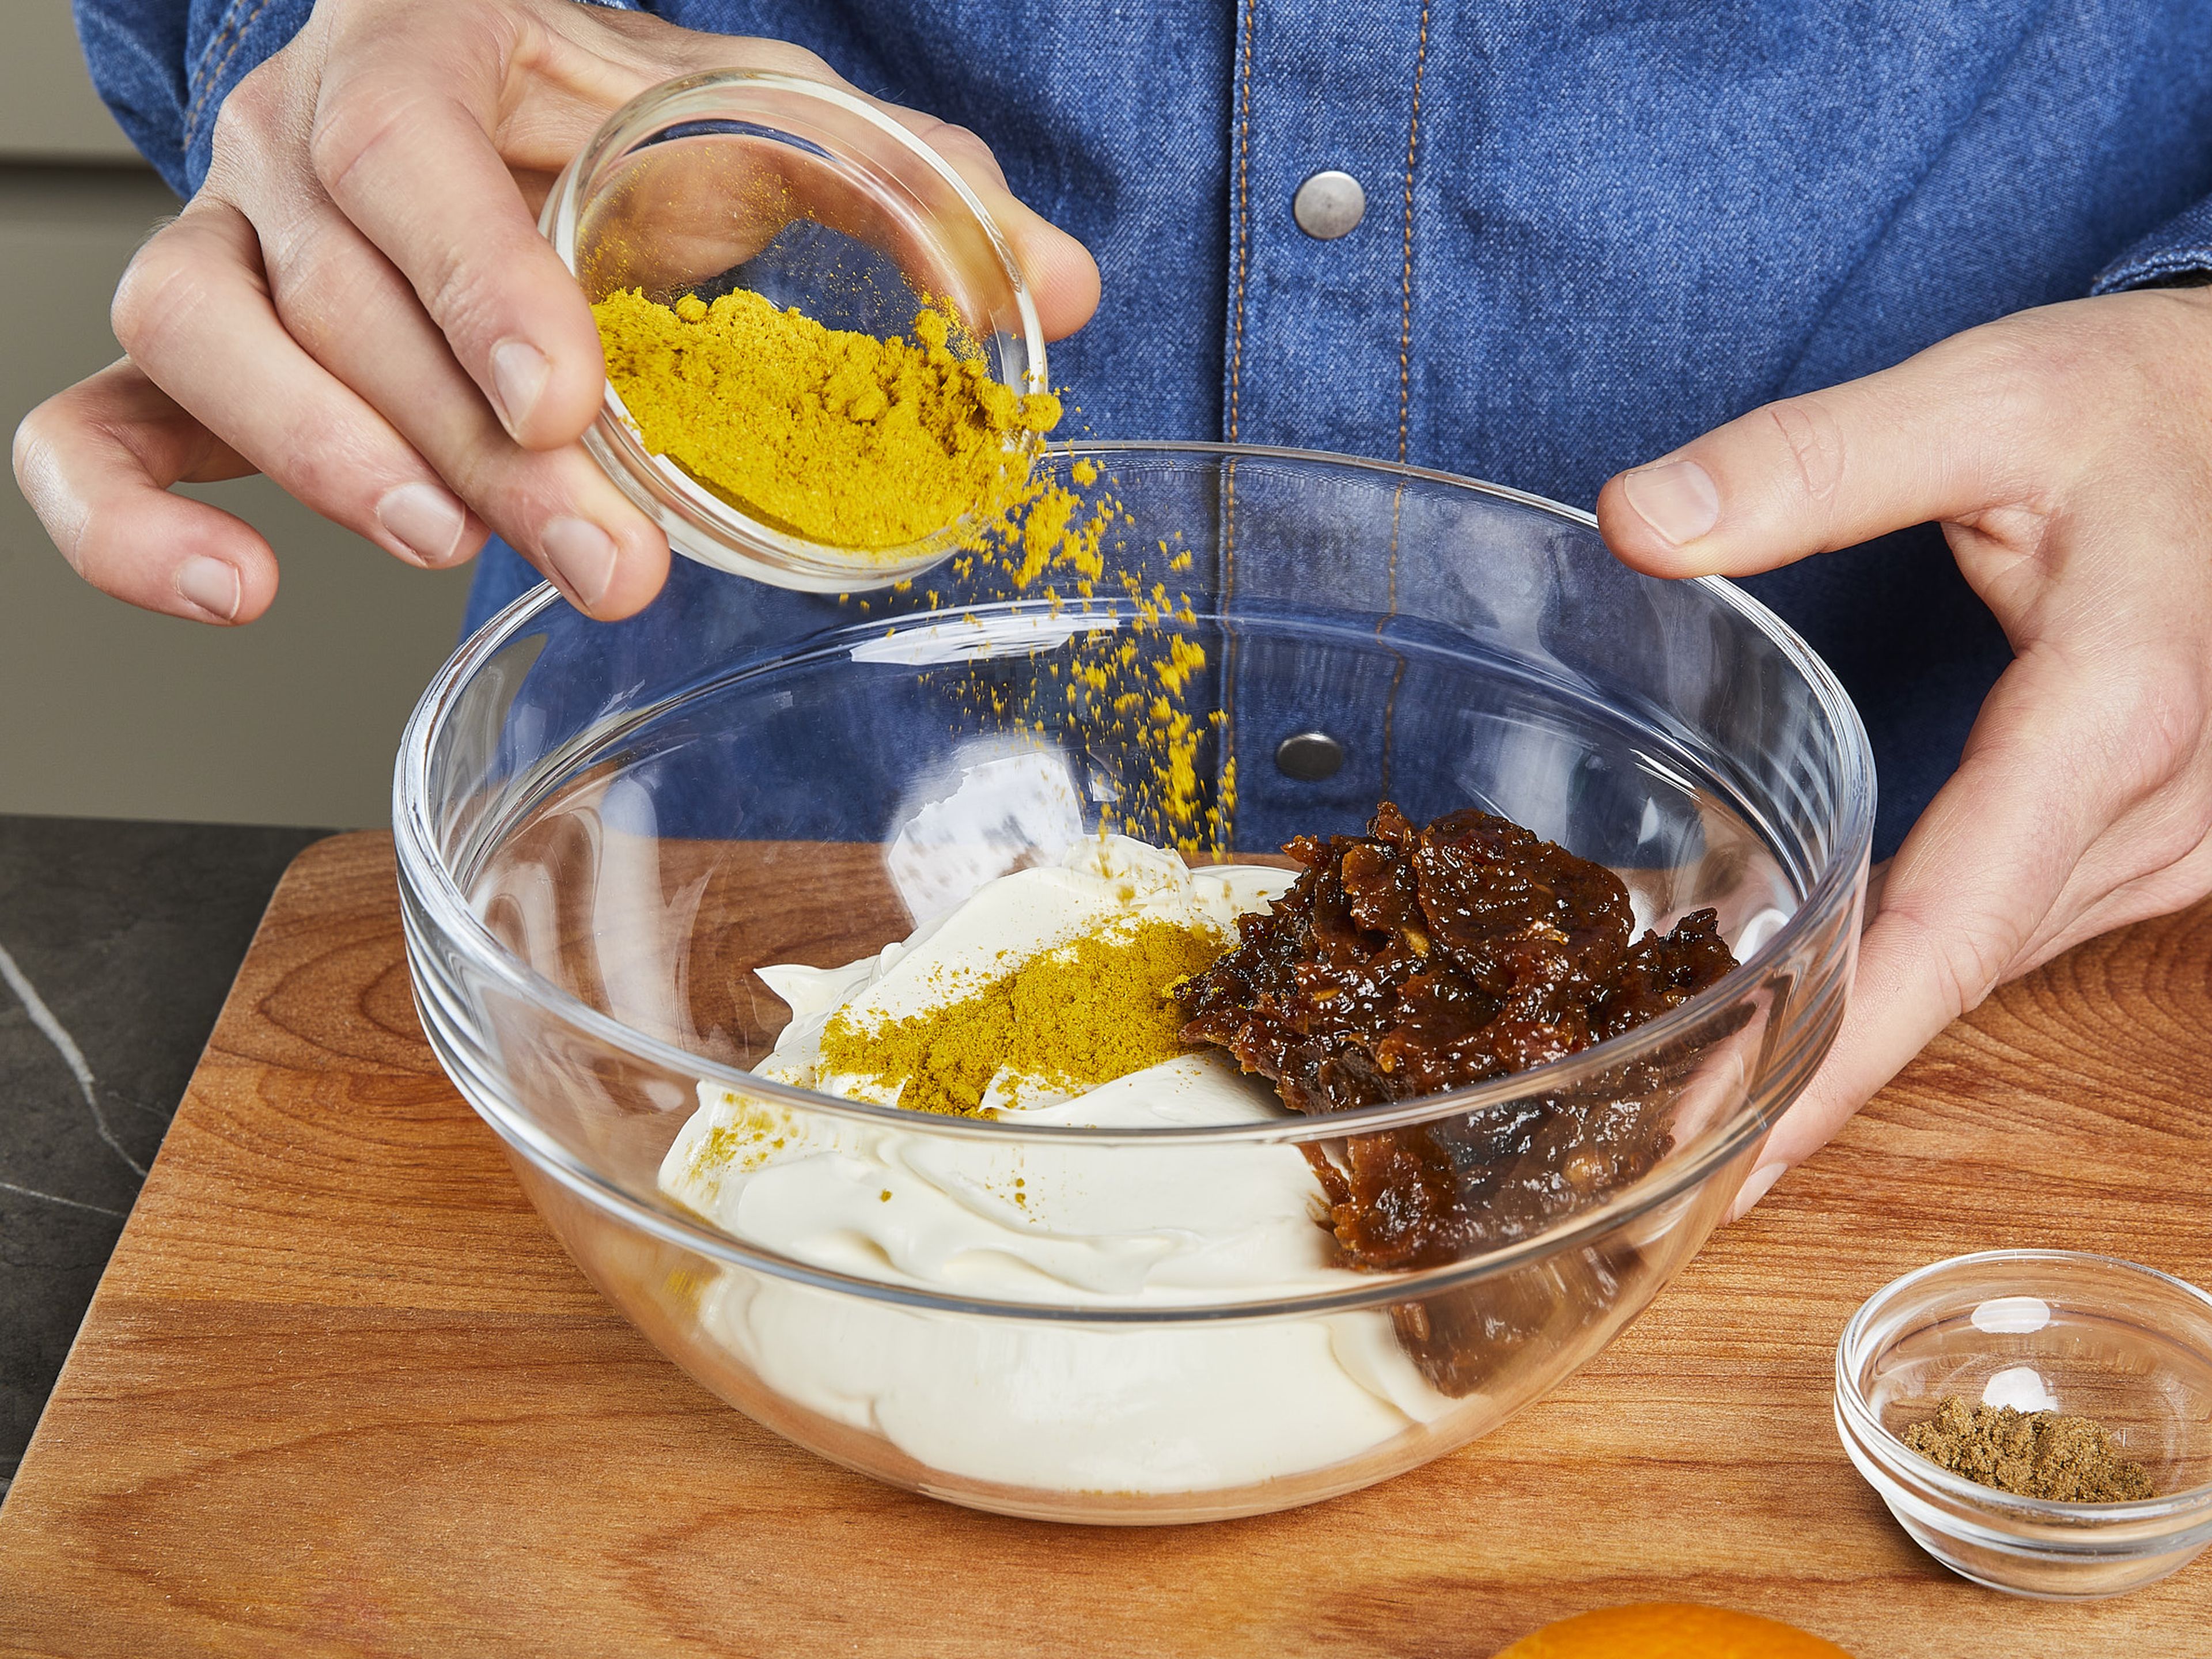 Datteln mit Orangensaft- und abrieb in der Küchenmaschine zu einer groben Paste mixen. Anschließend mit Frischkäse, Currypulver und gemahlenem Koriander vermengen. Mit Salz und Pfeffer würzen.